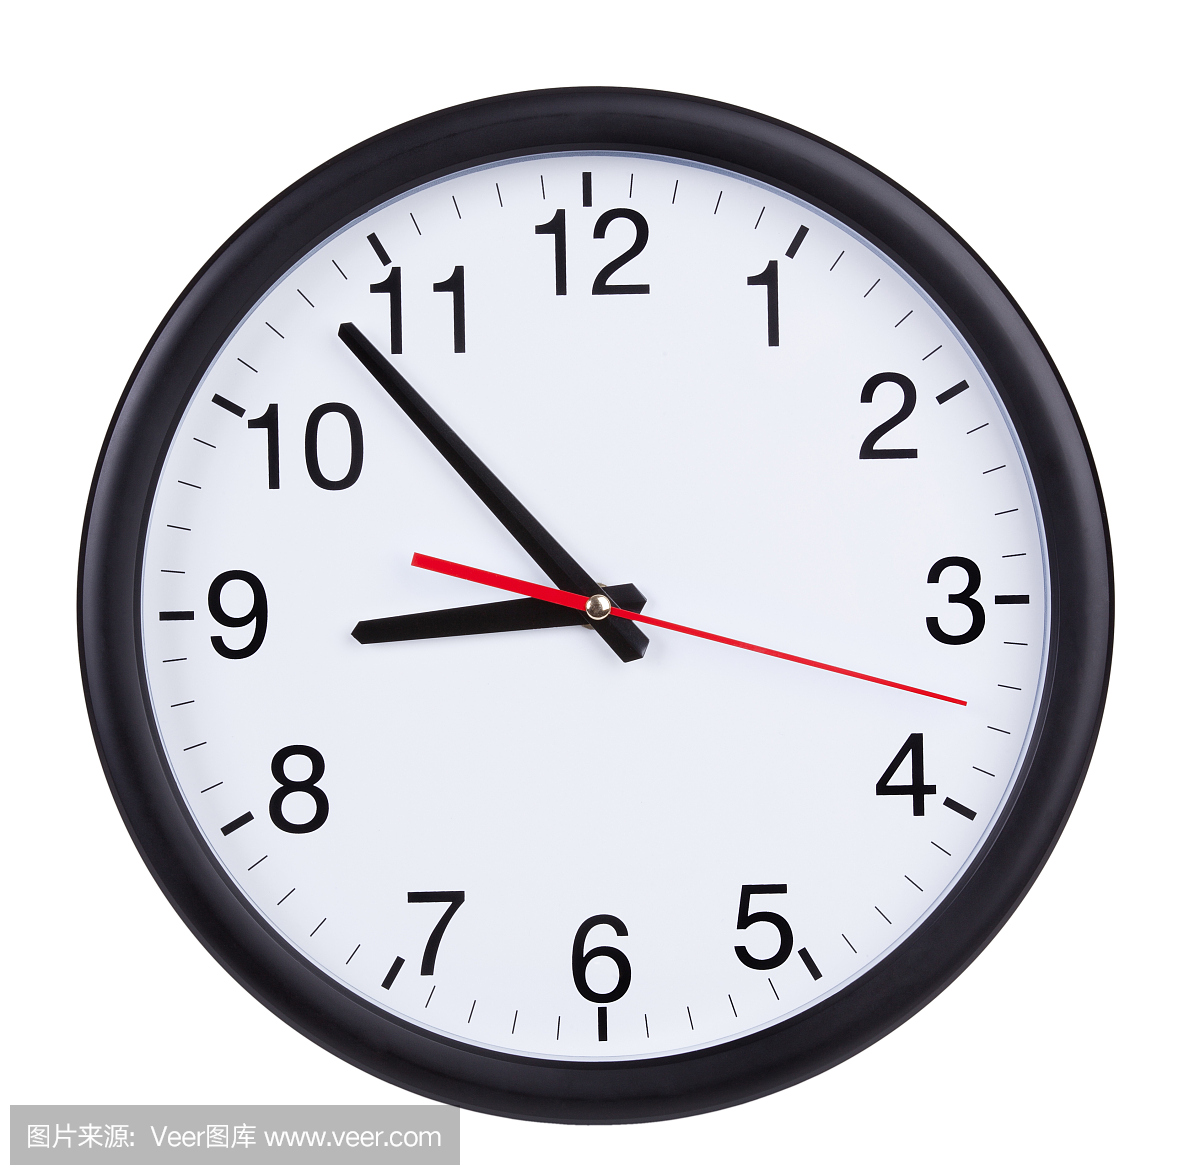 钟表时刻表示_看钟表写时刻_微信公众号文章